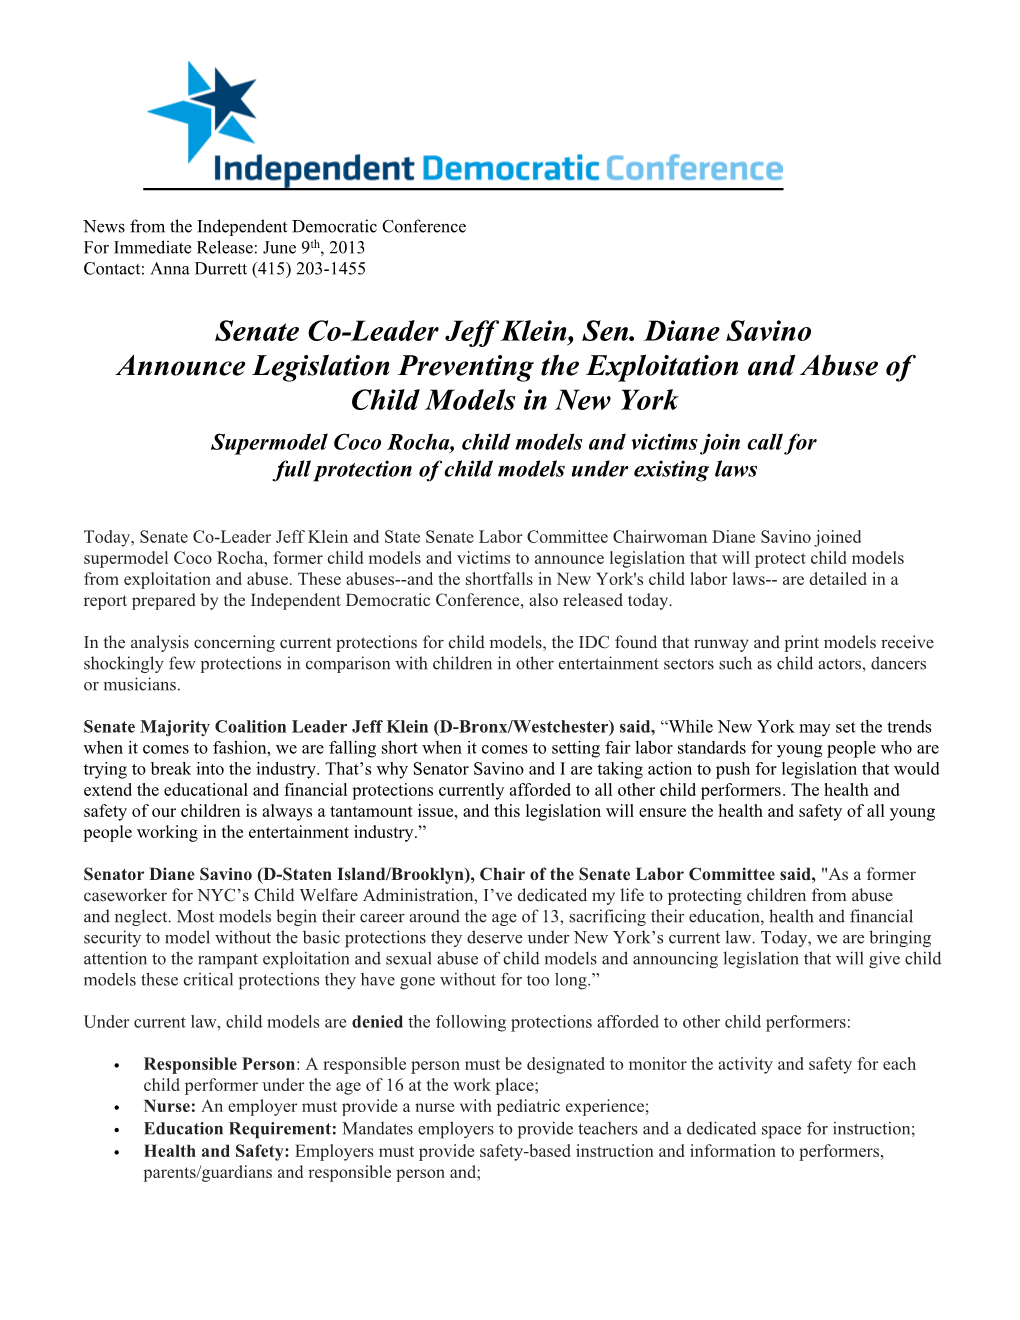 Senate Co-Leader Jeff Klein, Sen. Diane Savino Announce Legislation Preventing the Exploitation and Abuse of Child Models in New York